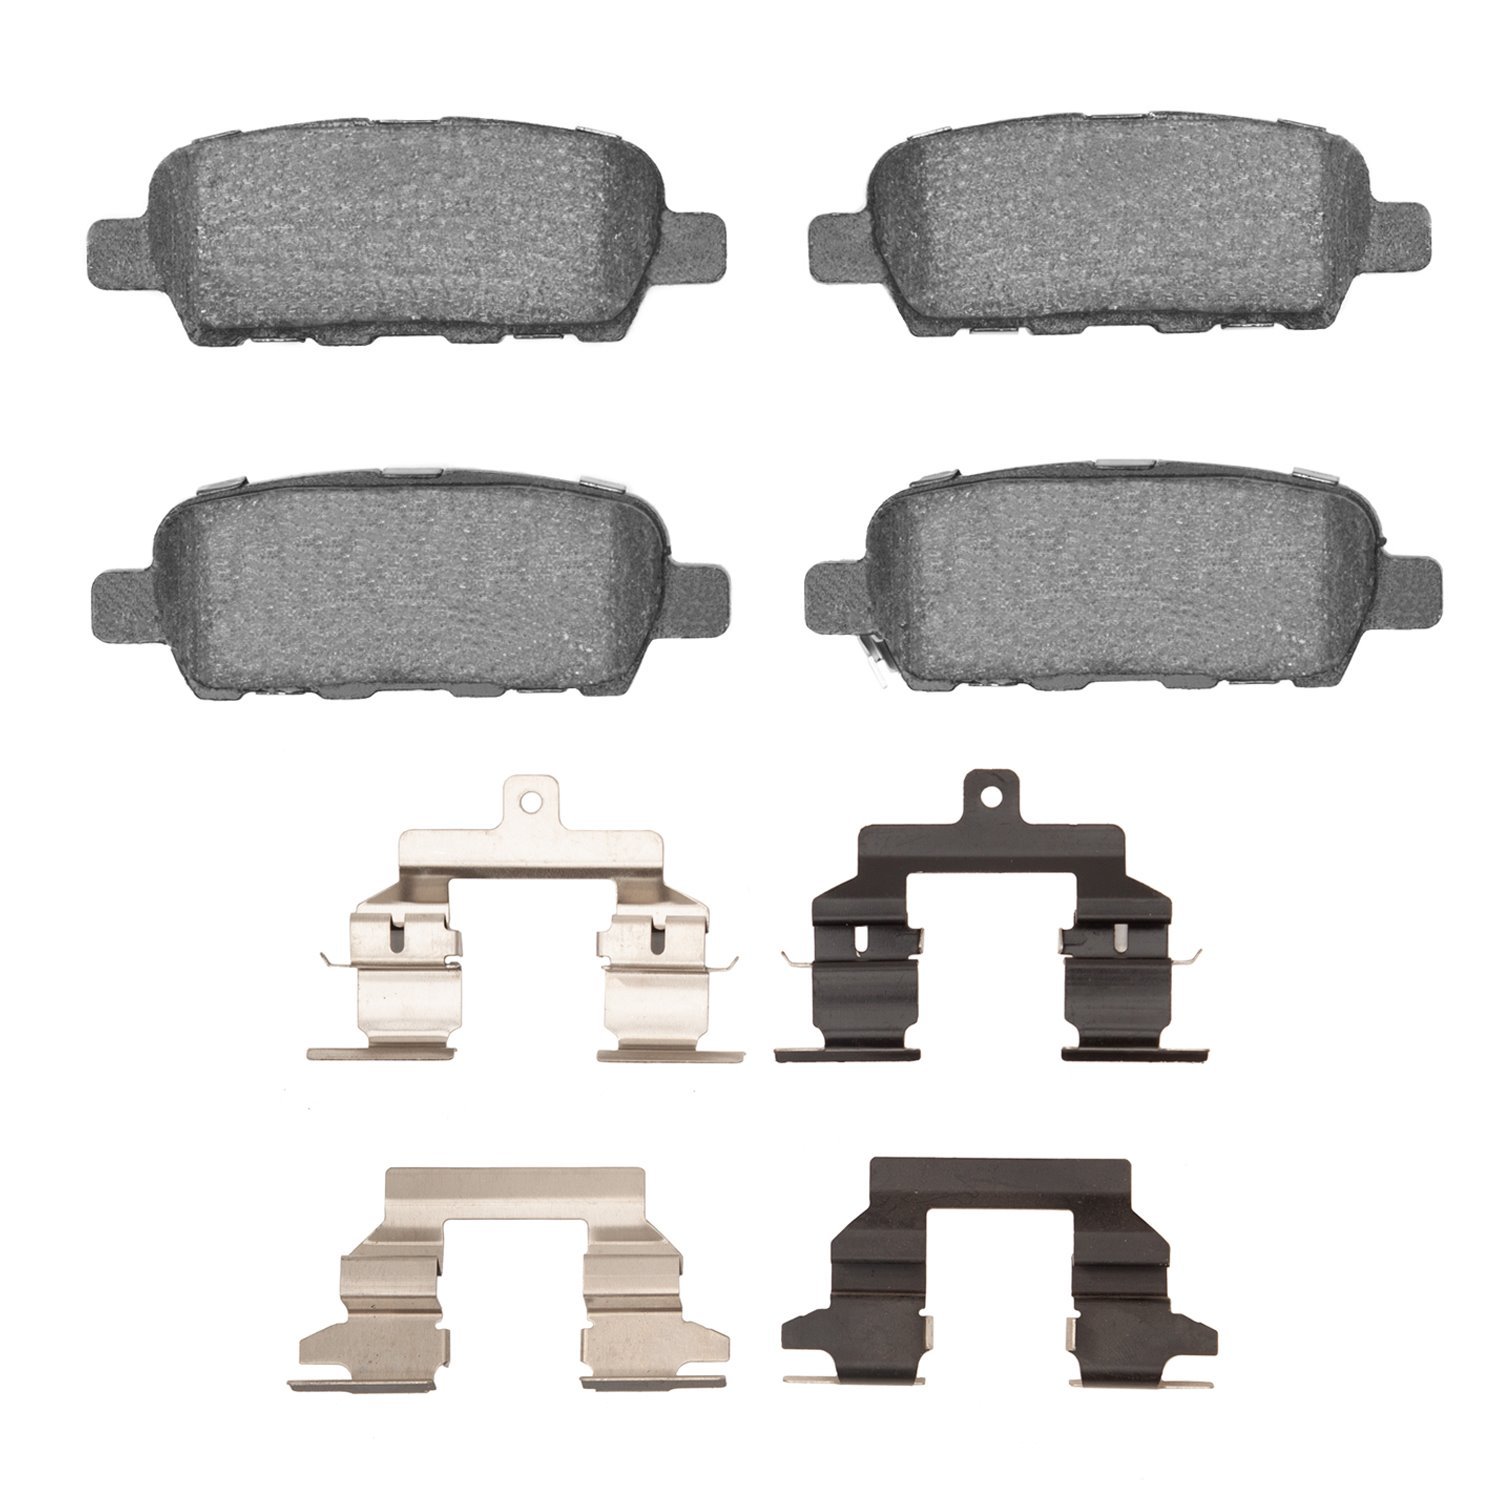 1310-0905-02 3000-Series Ceramic Brake Pads & Hardware Kit, 2008-2013 Infiniti/Nissan, Position: Rear